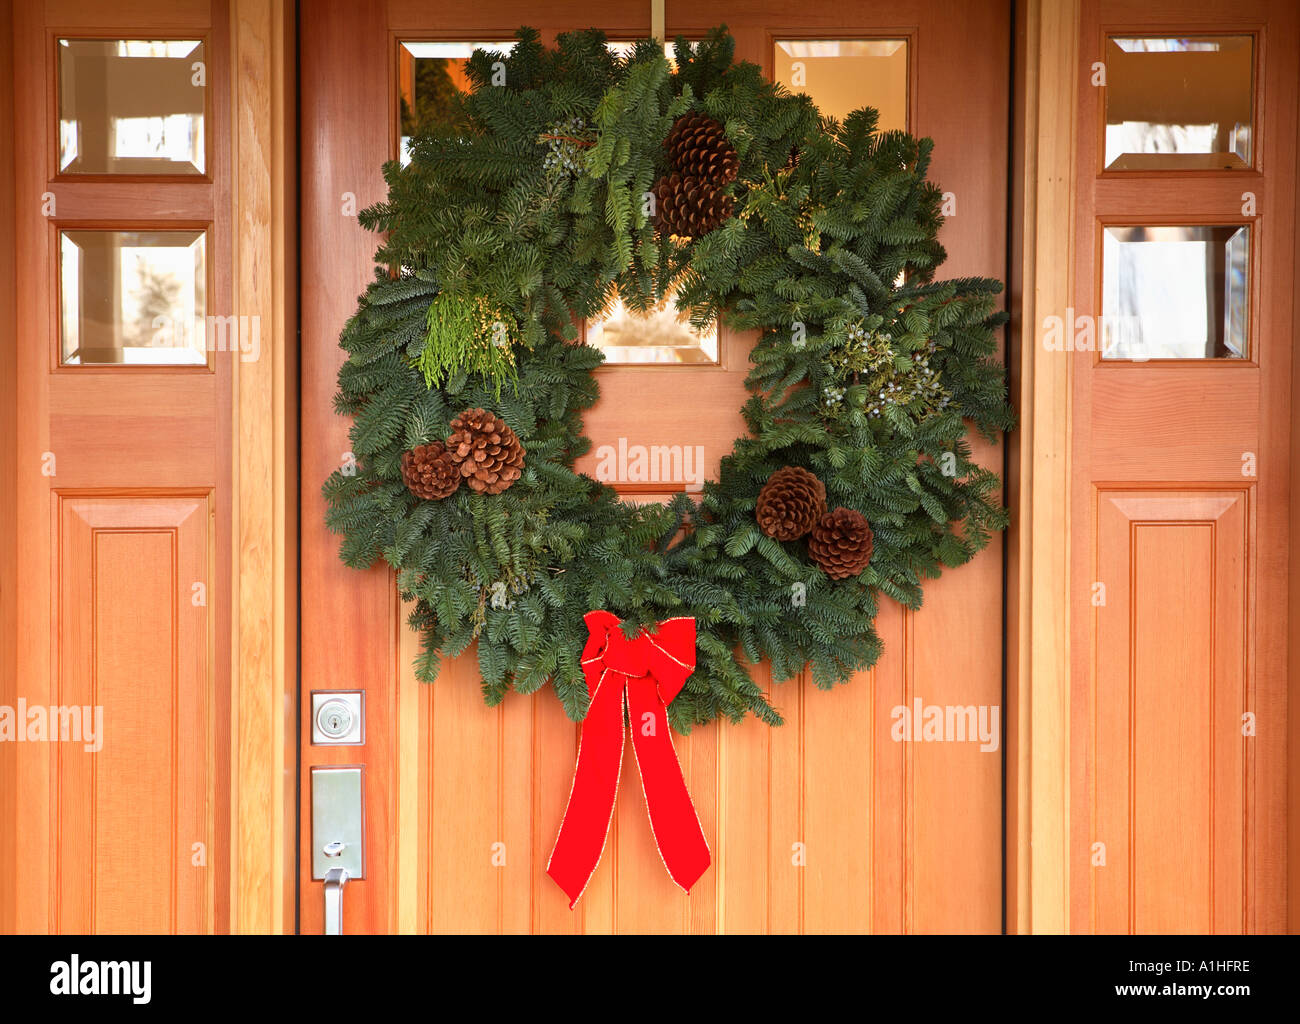 Christmas wreath on front door. Stock Photo